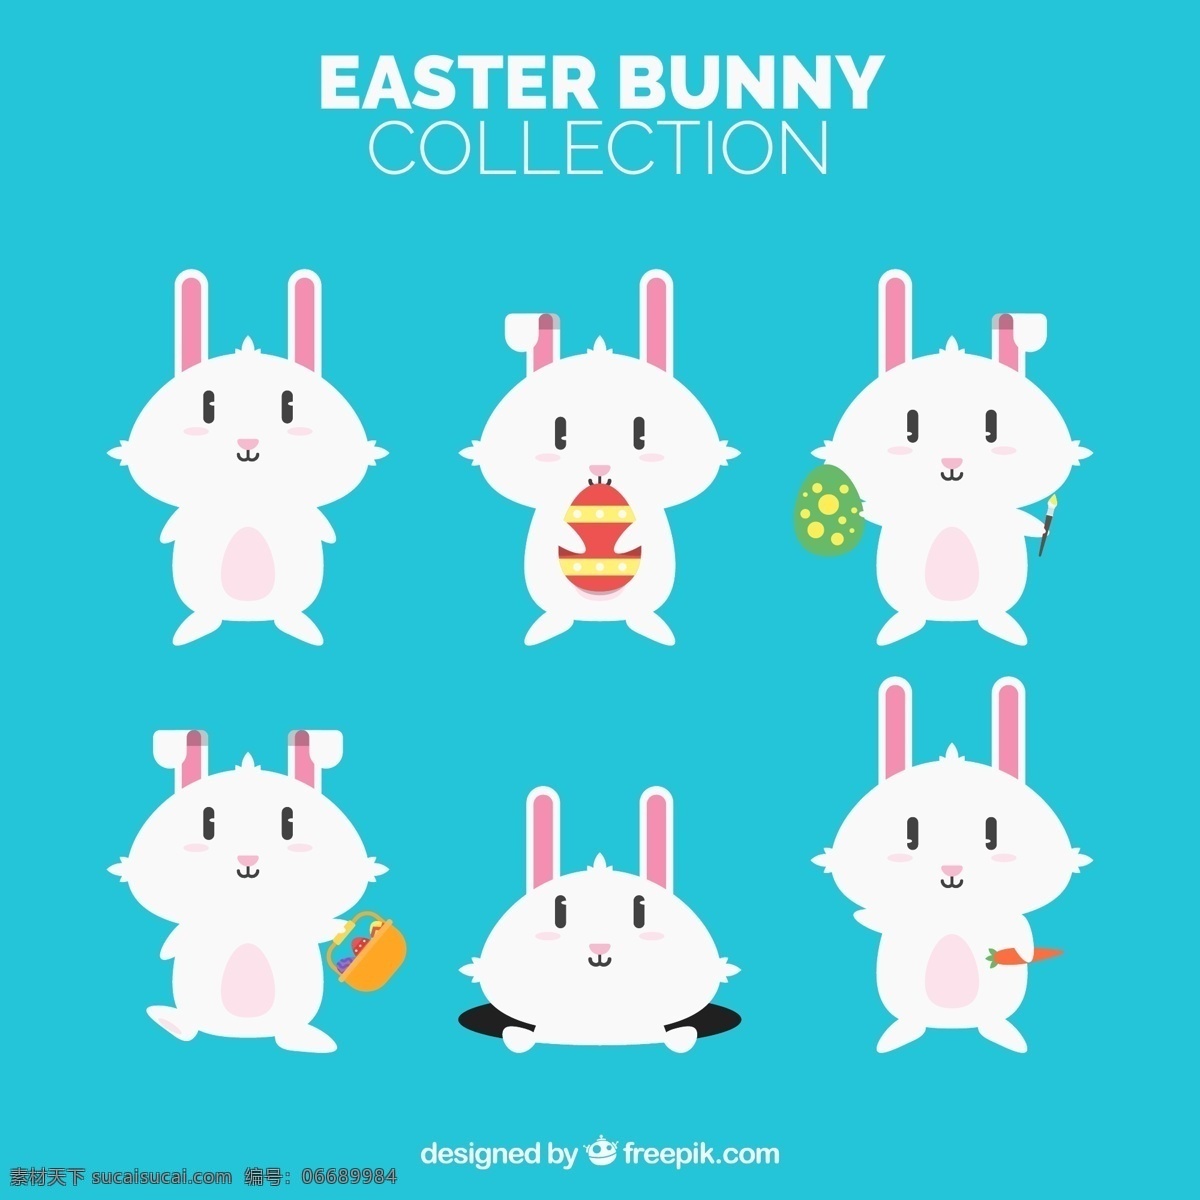 复活节 中秋节 白色 小 兔子 原色 元素 设计素材 创意设计 动物 小动物 卡通 可爱 矢量素材 节日元素